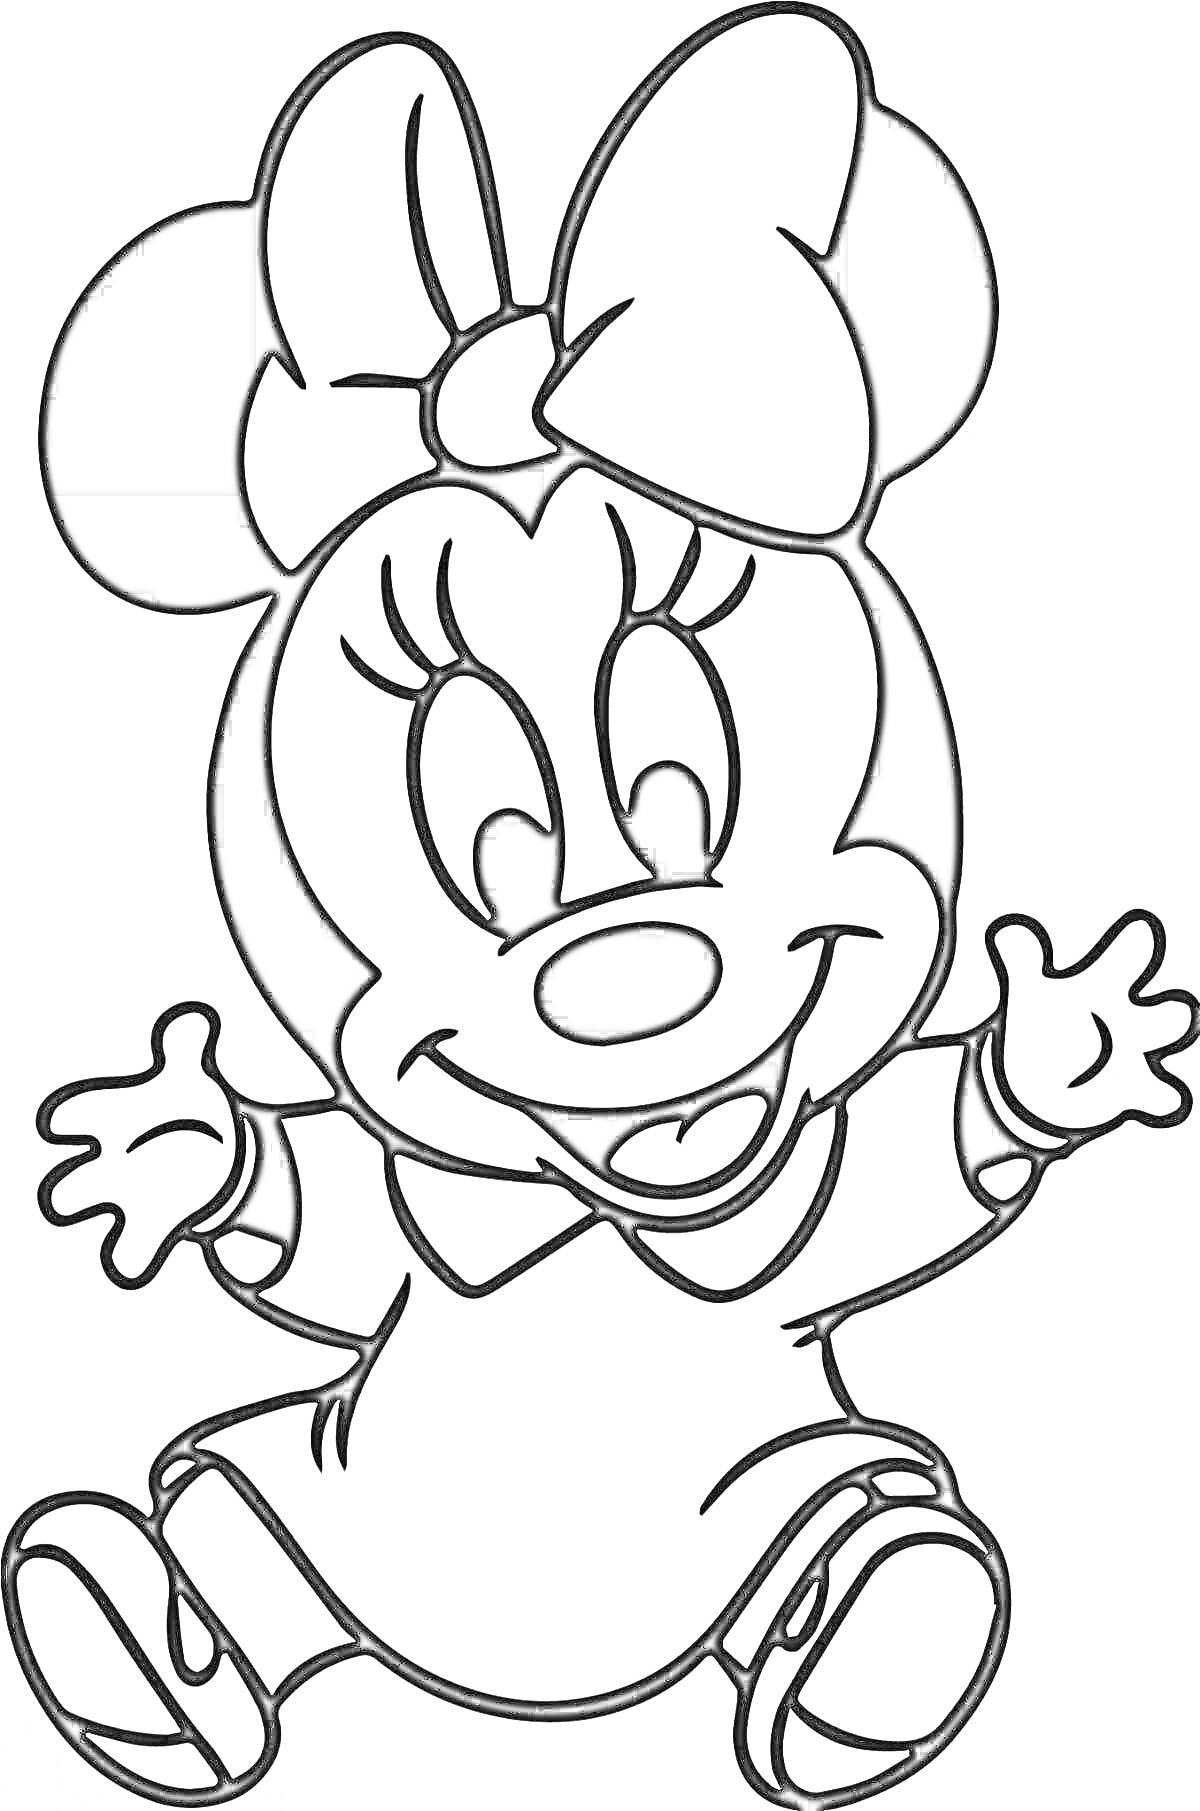 Раскраска Миниатюрная мышка с бантом на голове и в платье сидит